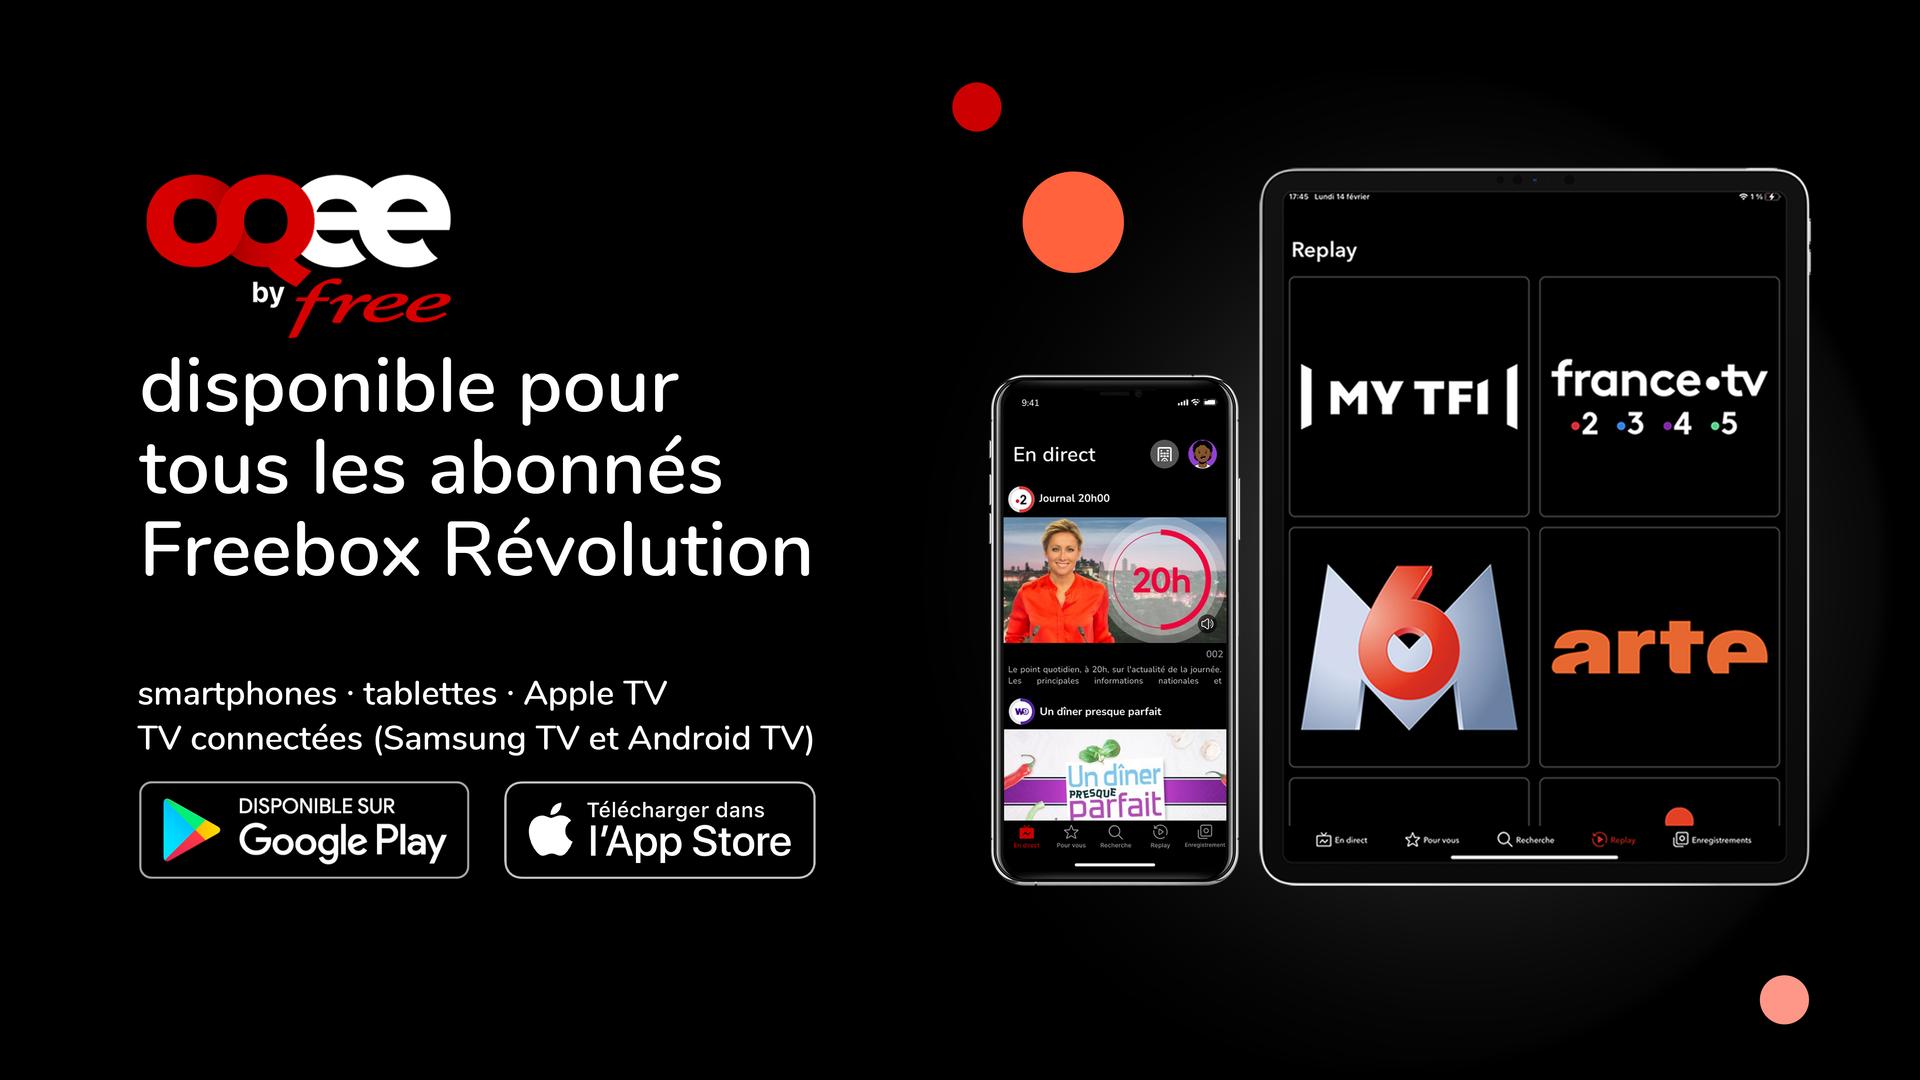 L’application TV OQEE by Free est désormais disponible gratuitement pour tous les abonnés Freebox Révolution